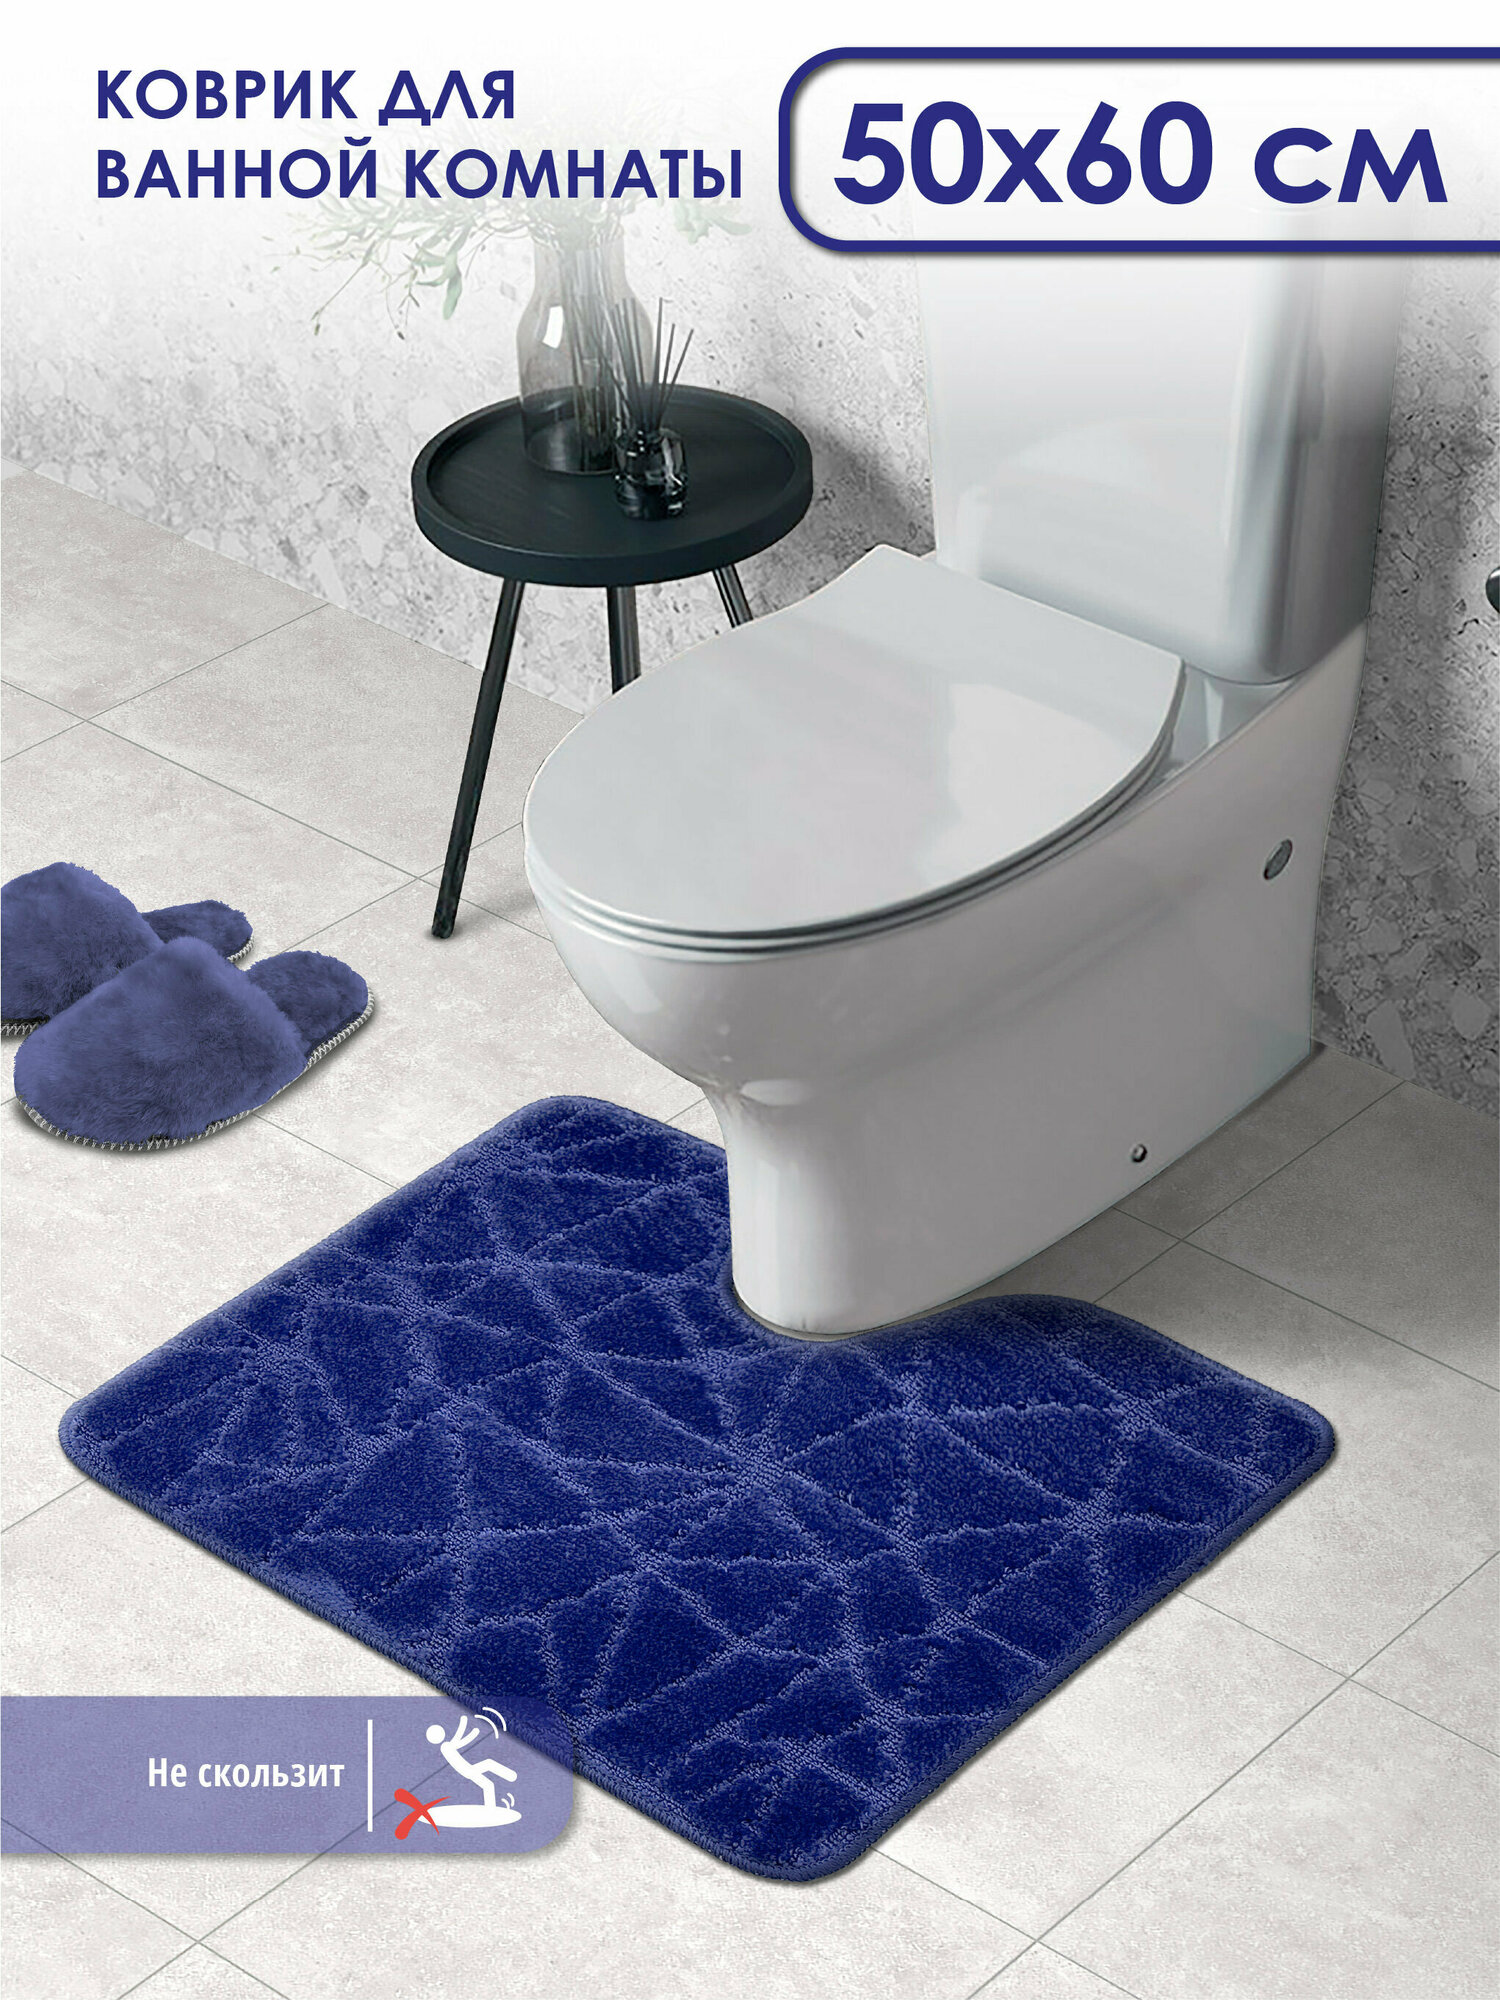 Коврик для ванной и туалета SHAHINTEX PP противоскользящий 50х60 001 темно-синий 14, коврик для туалета с вырезом